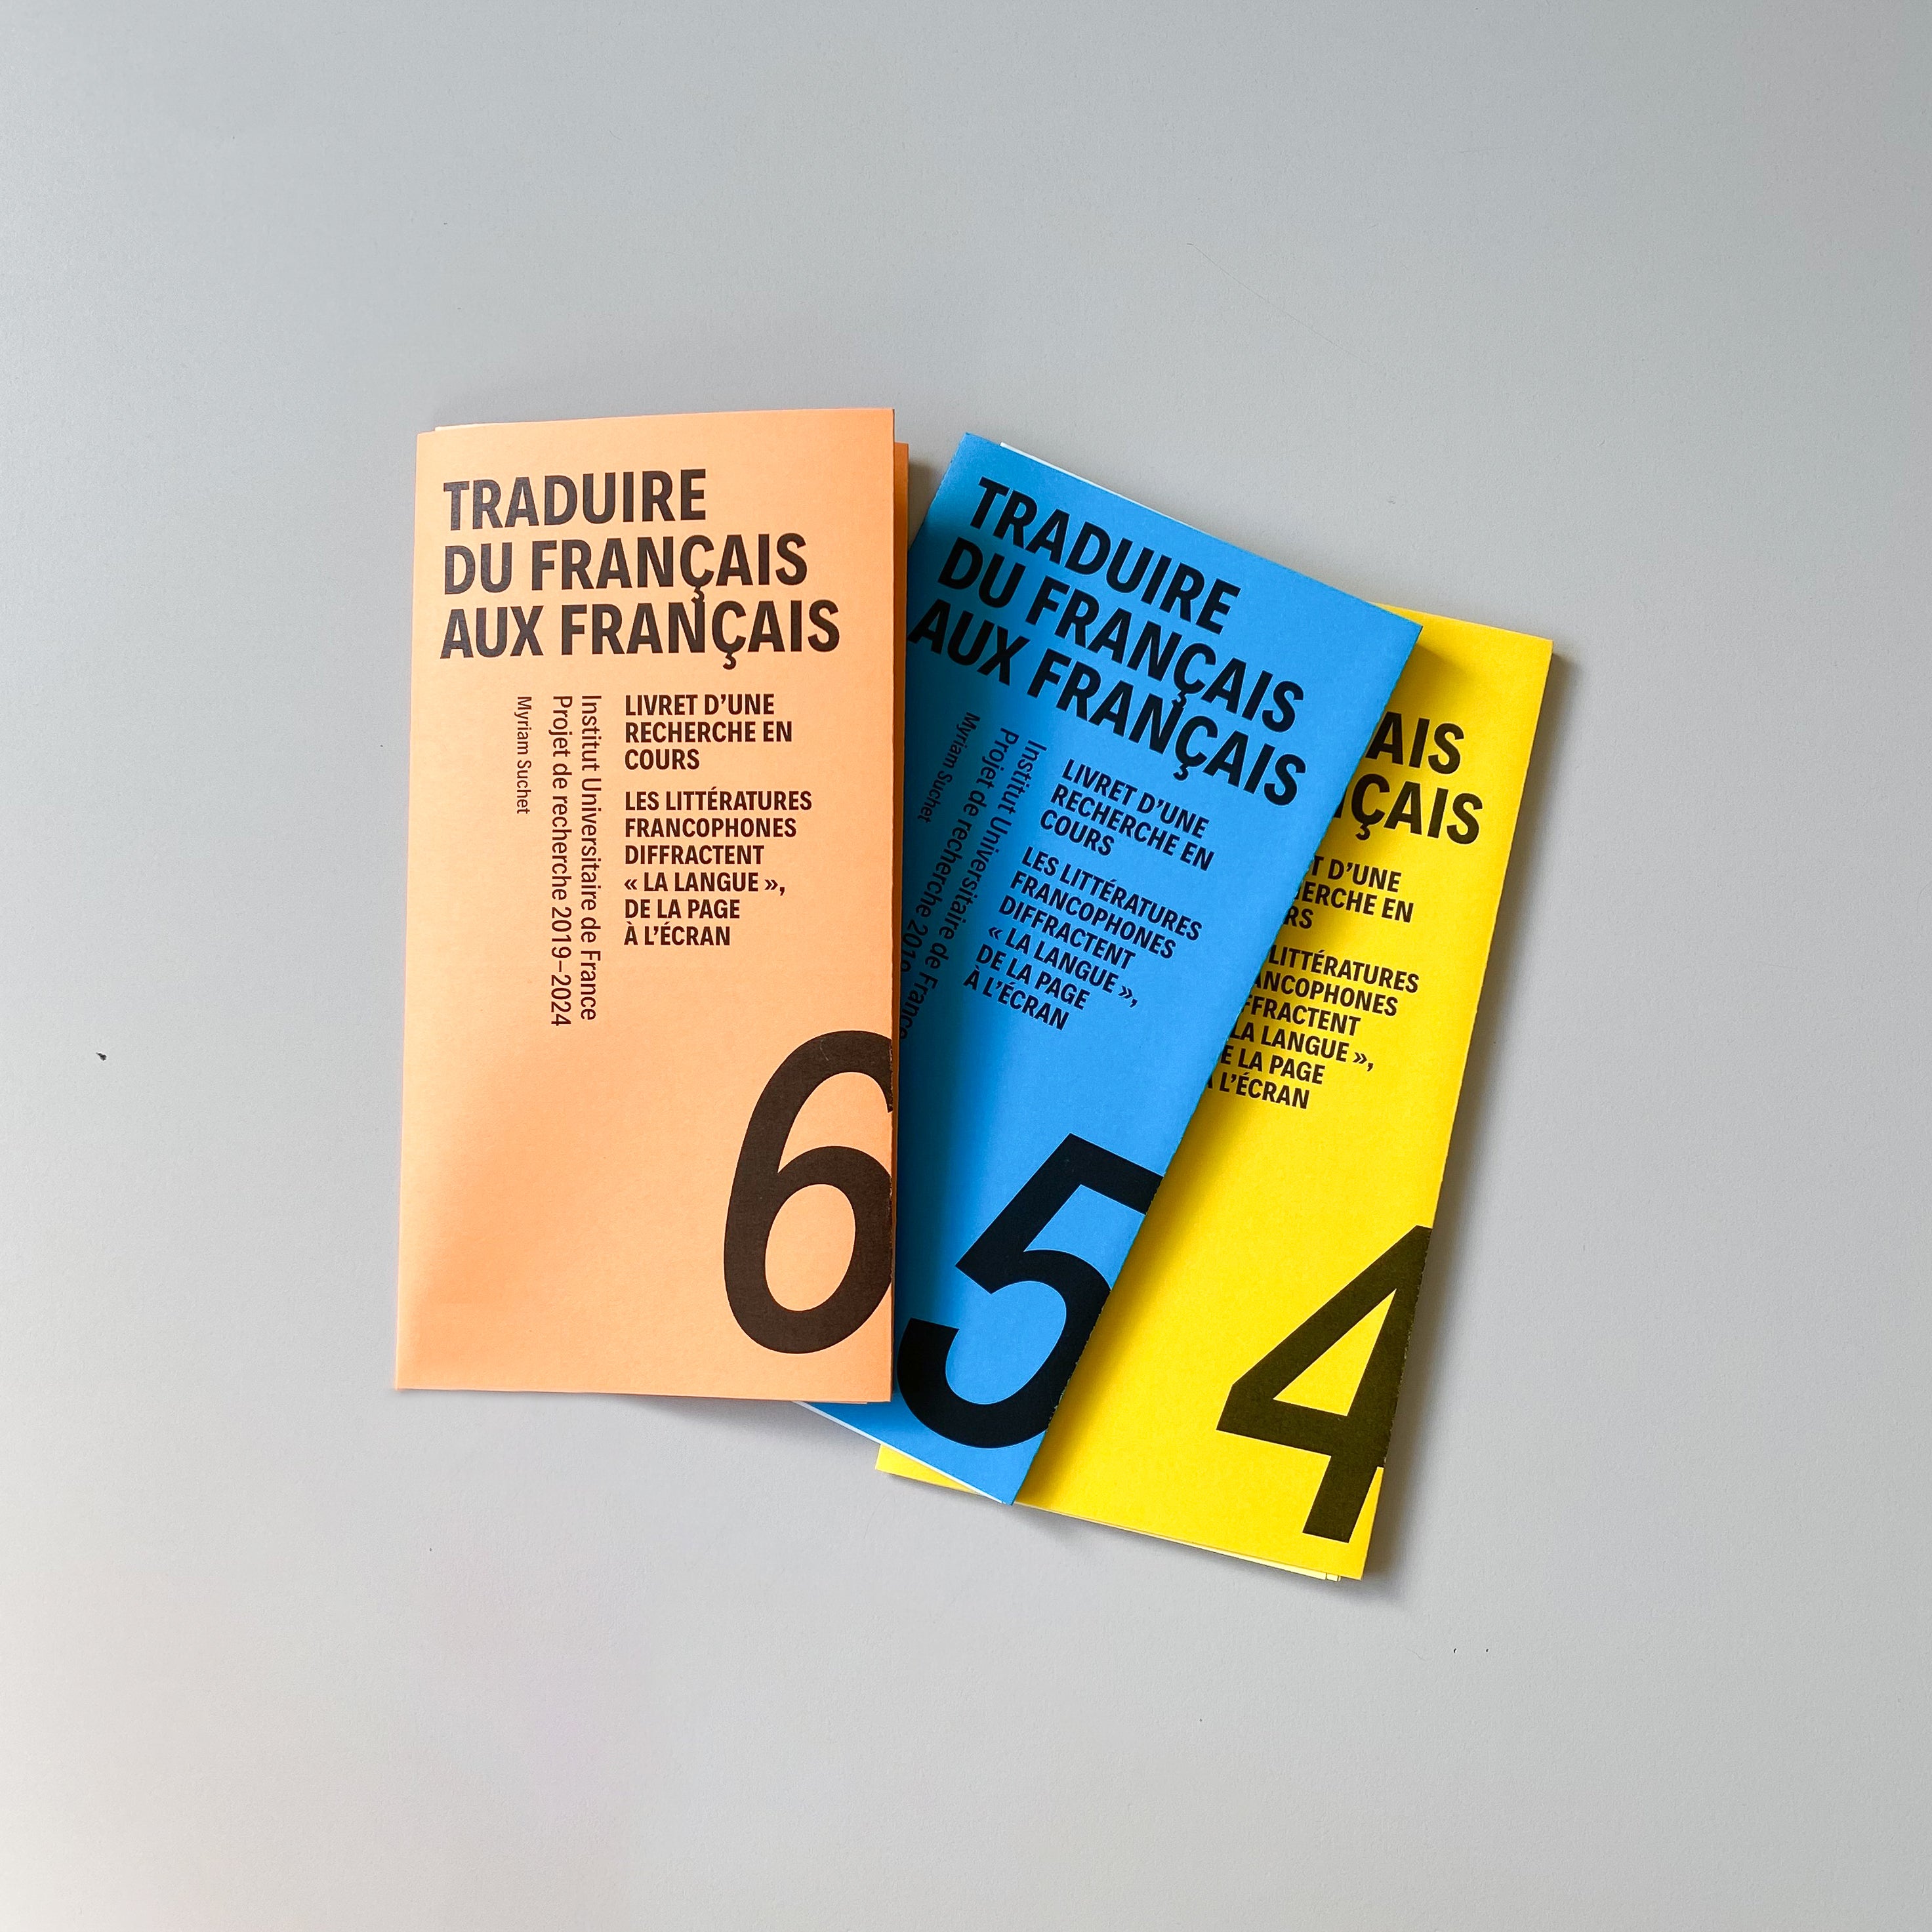 Le numéro 6 de Traduire du français aux français est disponible !